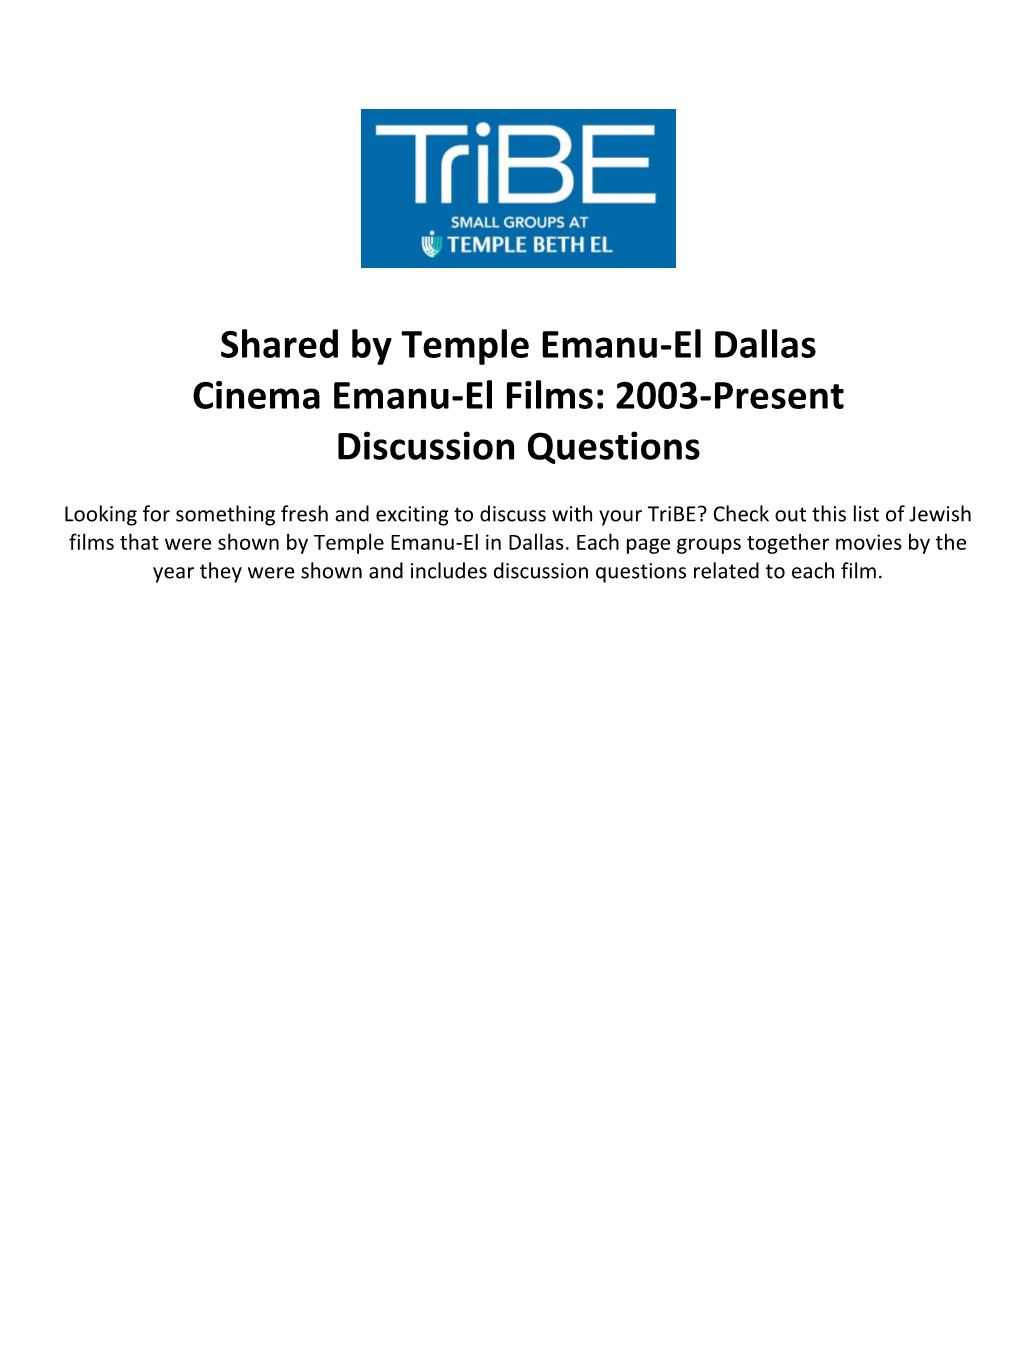 Shared by Temple Emanu-El Dallas Cinema Emanu-El Films: 2003-Present Discussion Questions